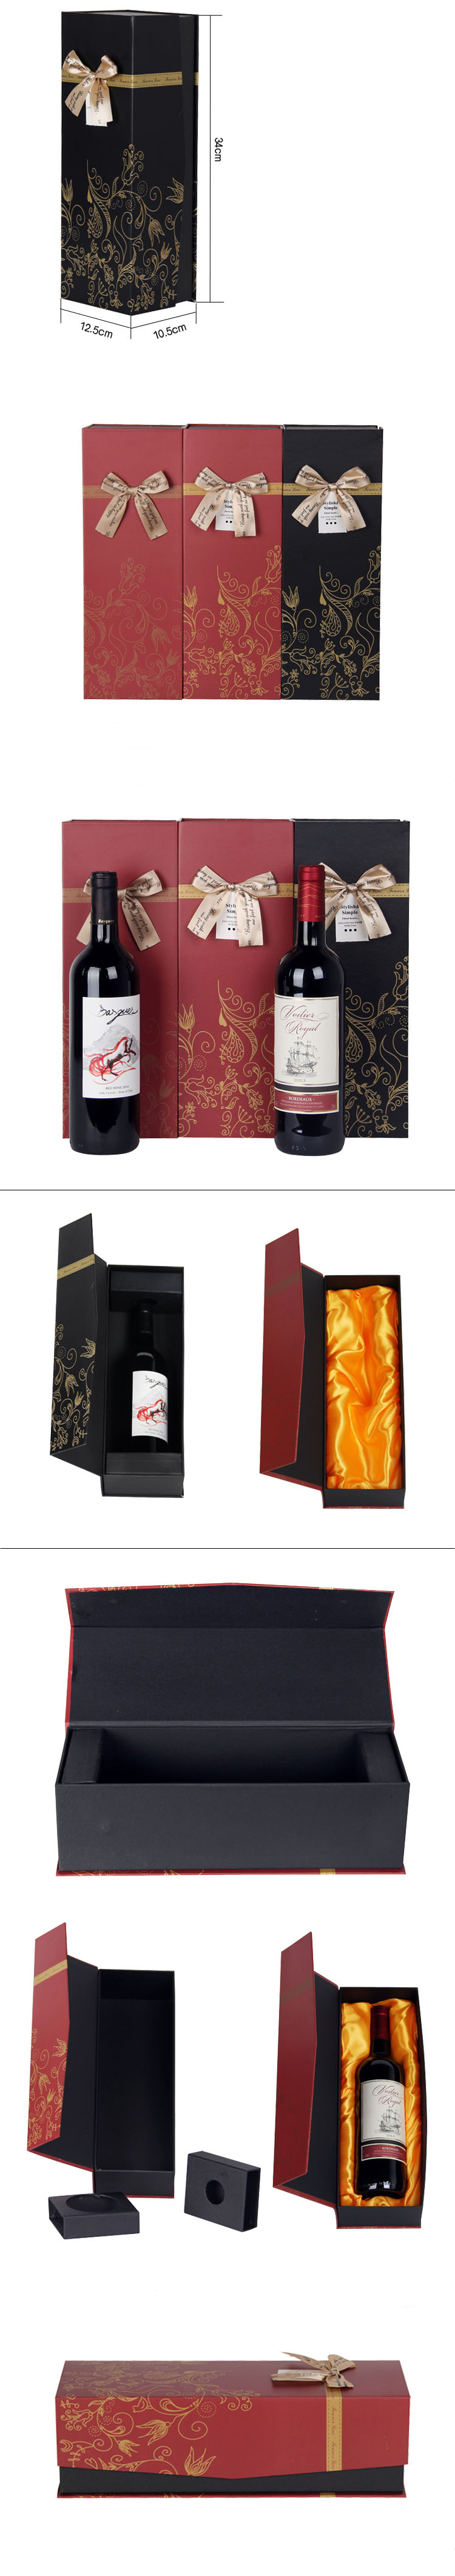 wine packaging box